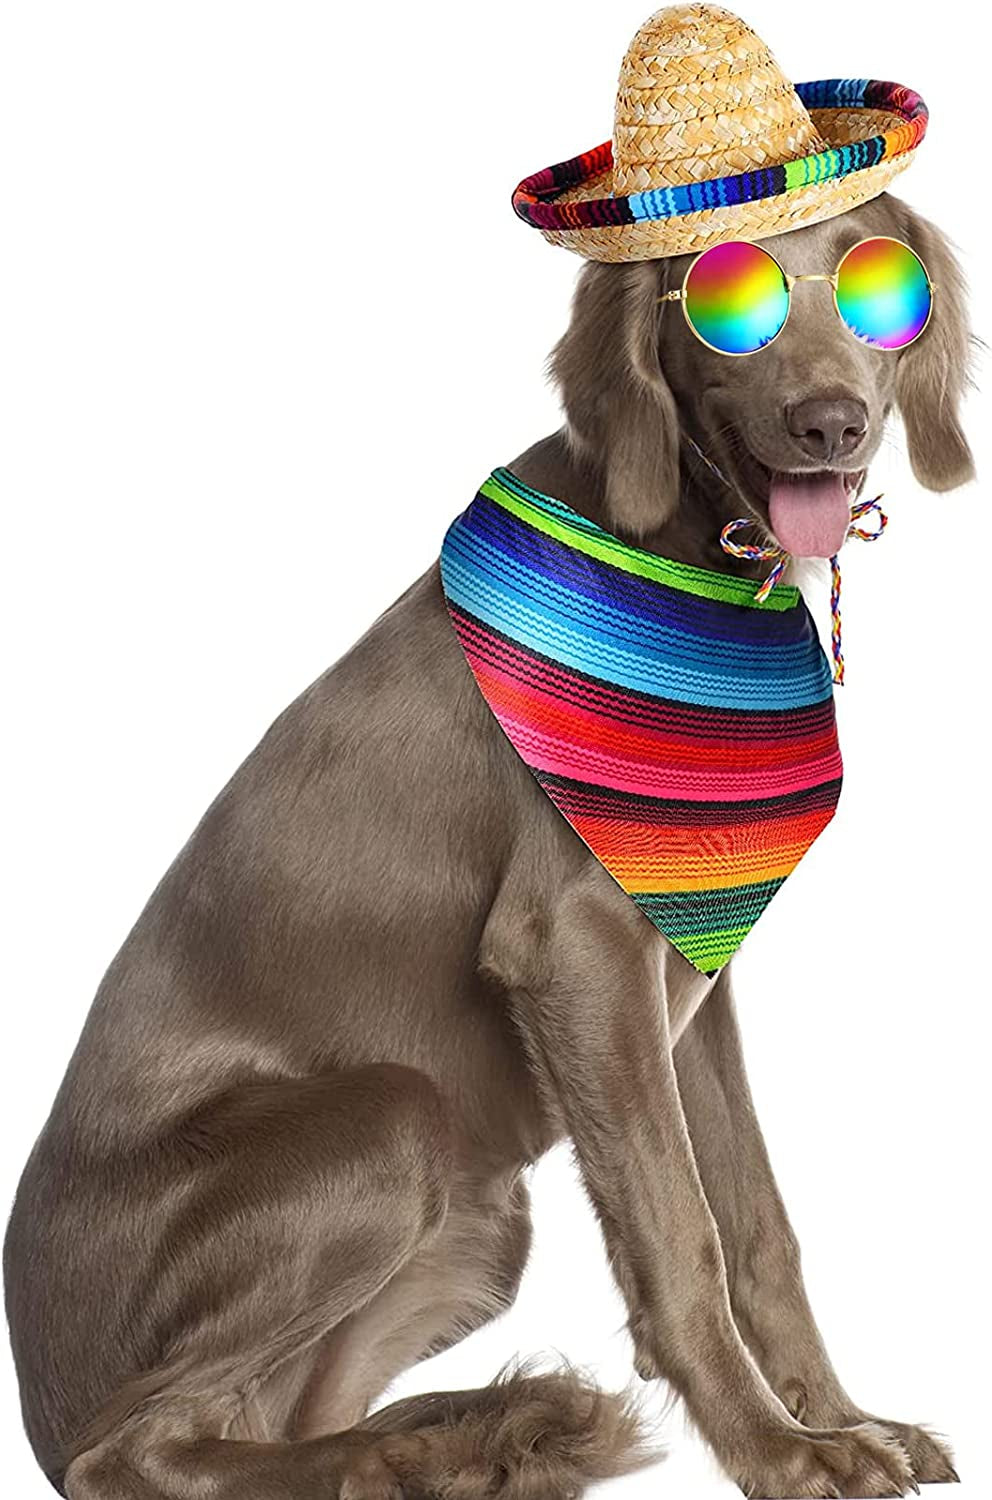 3 Pcs Mexican Dog Costume Include Multicolor Cinco De Mayo Dog Bandana Fiesta Dog Triangle Bib Mexican Dog Sombrero Hat round Sunglasses Costume for Dog Gifts Mexican Cinco De Mayo Party Decorations